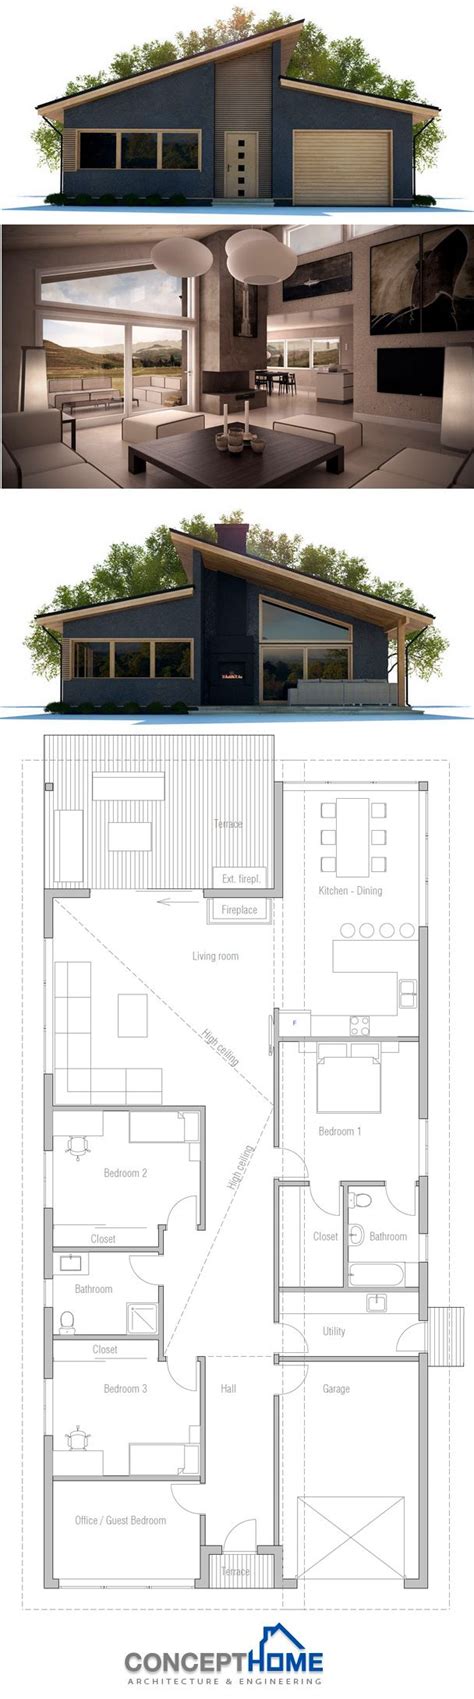 images  prefab home designs  pinterest house plans  zealand  house